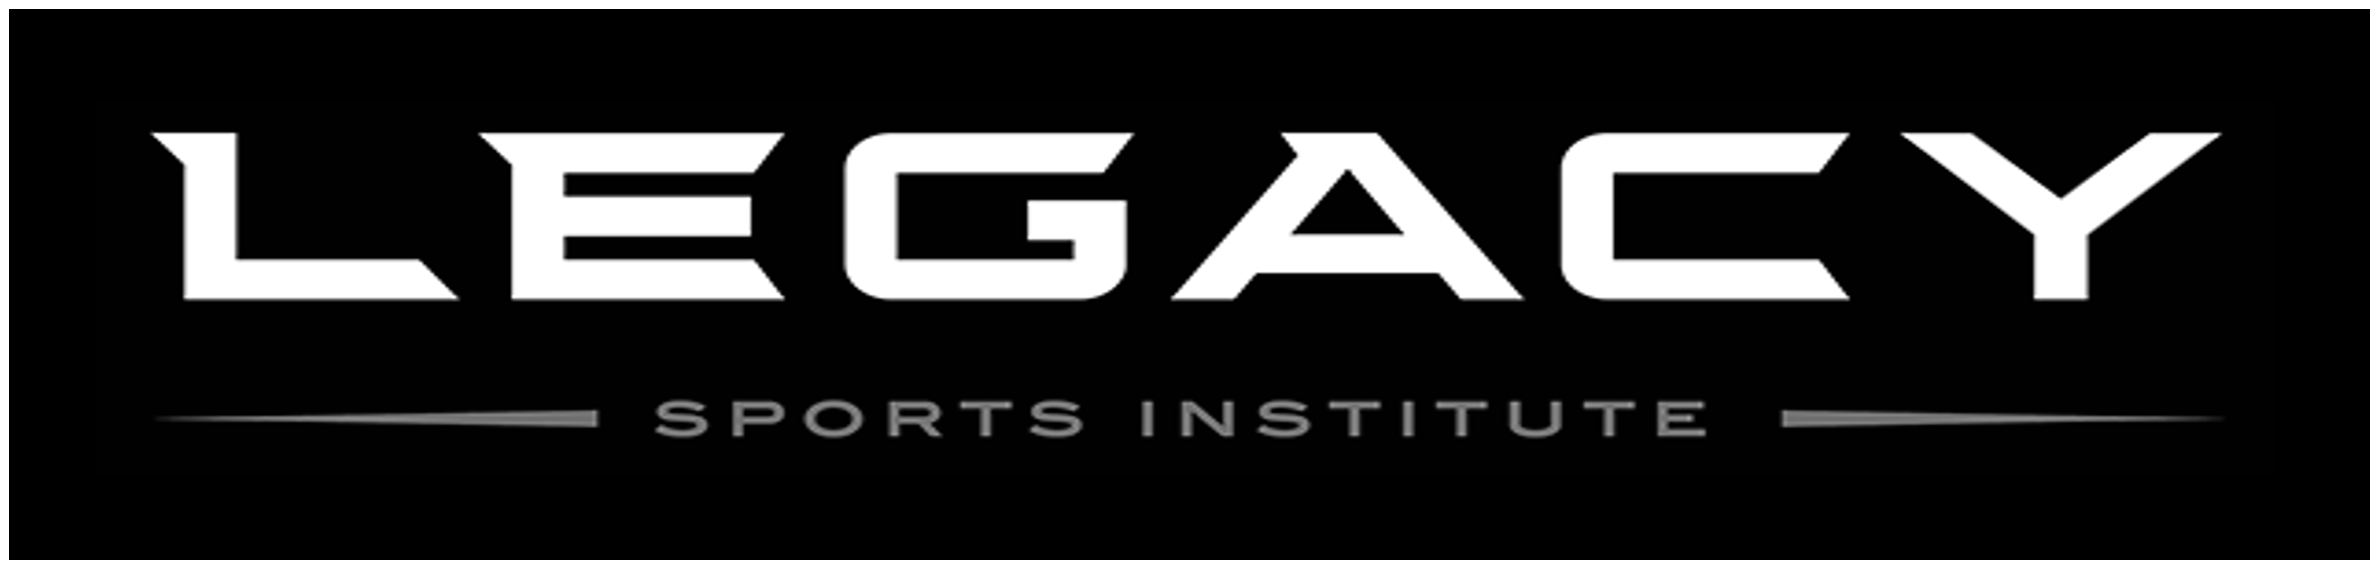 Legacy Sports Institute